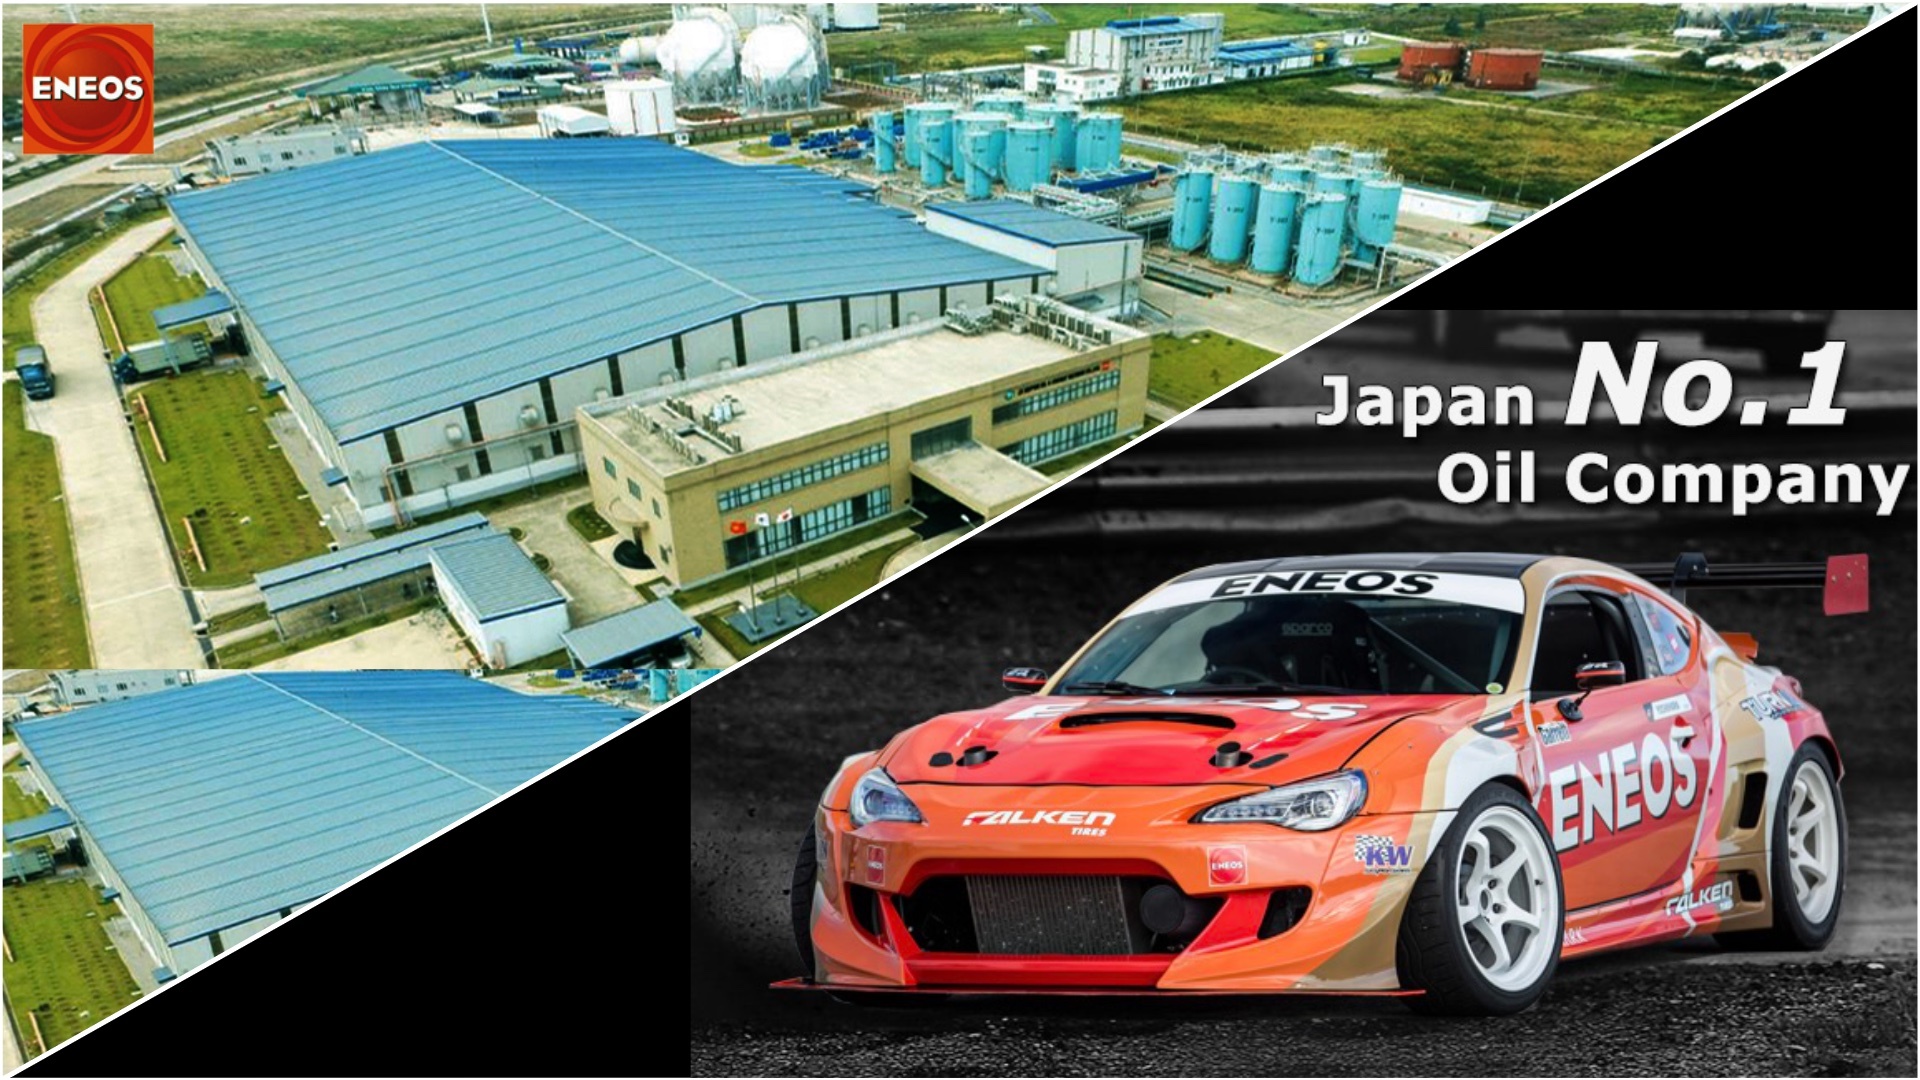 ENEOS No 1 Lubricant oil Company in Japan